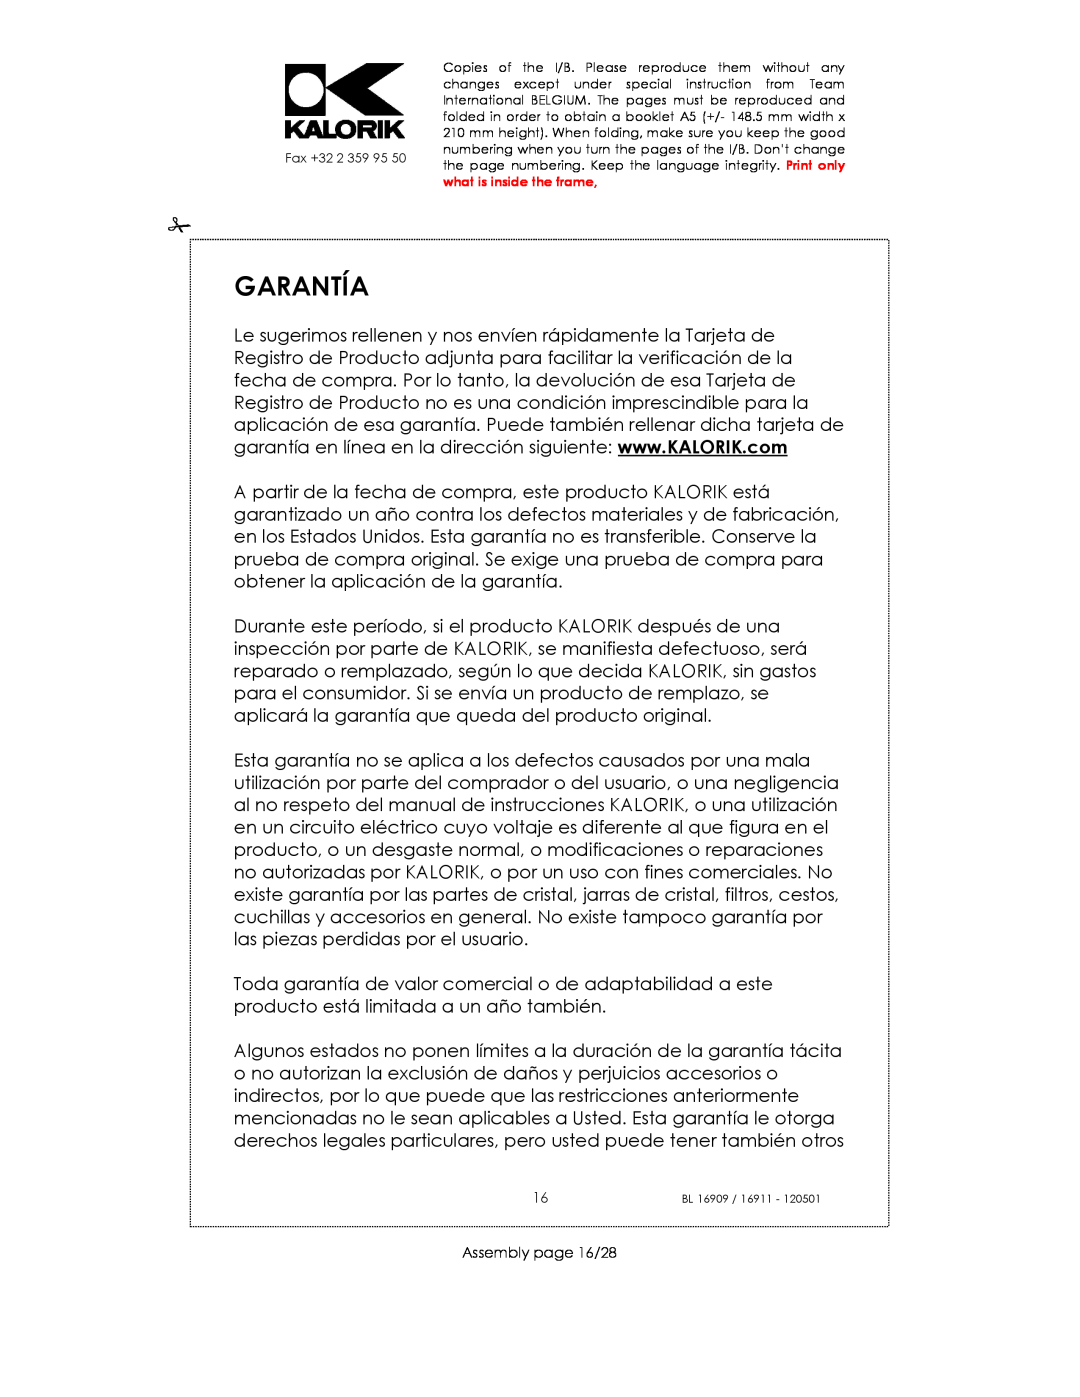 Kalorik 33029, usk bl 16909, 16911 manual Garantía, Assembly page 16/28 